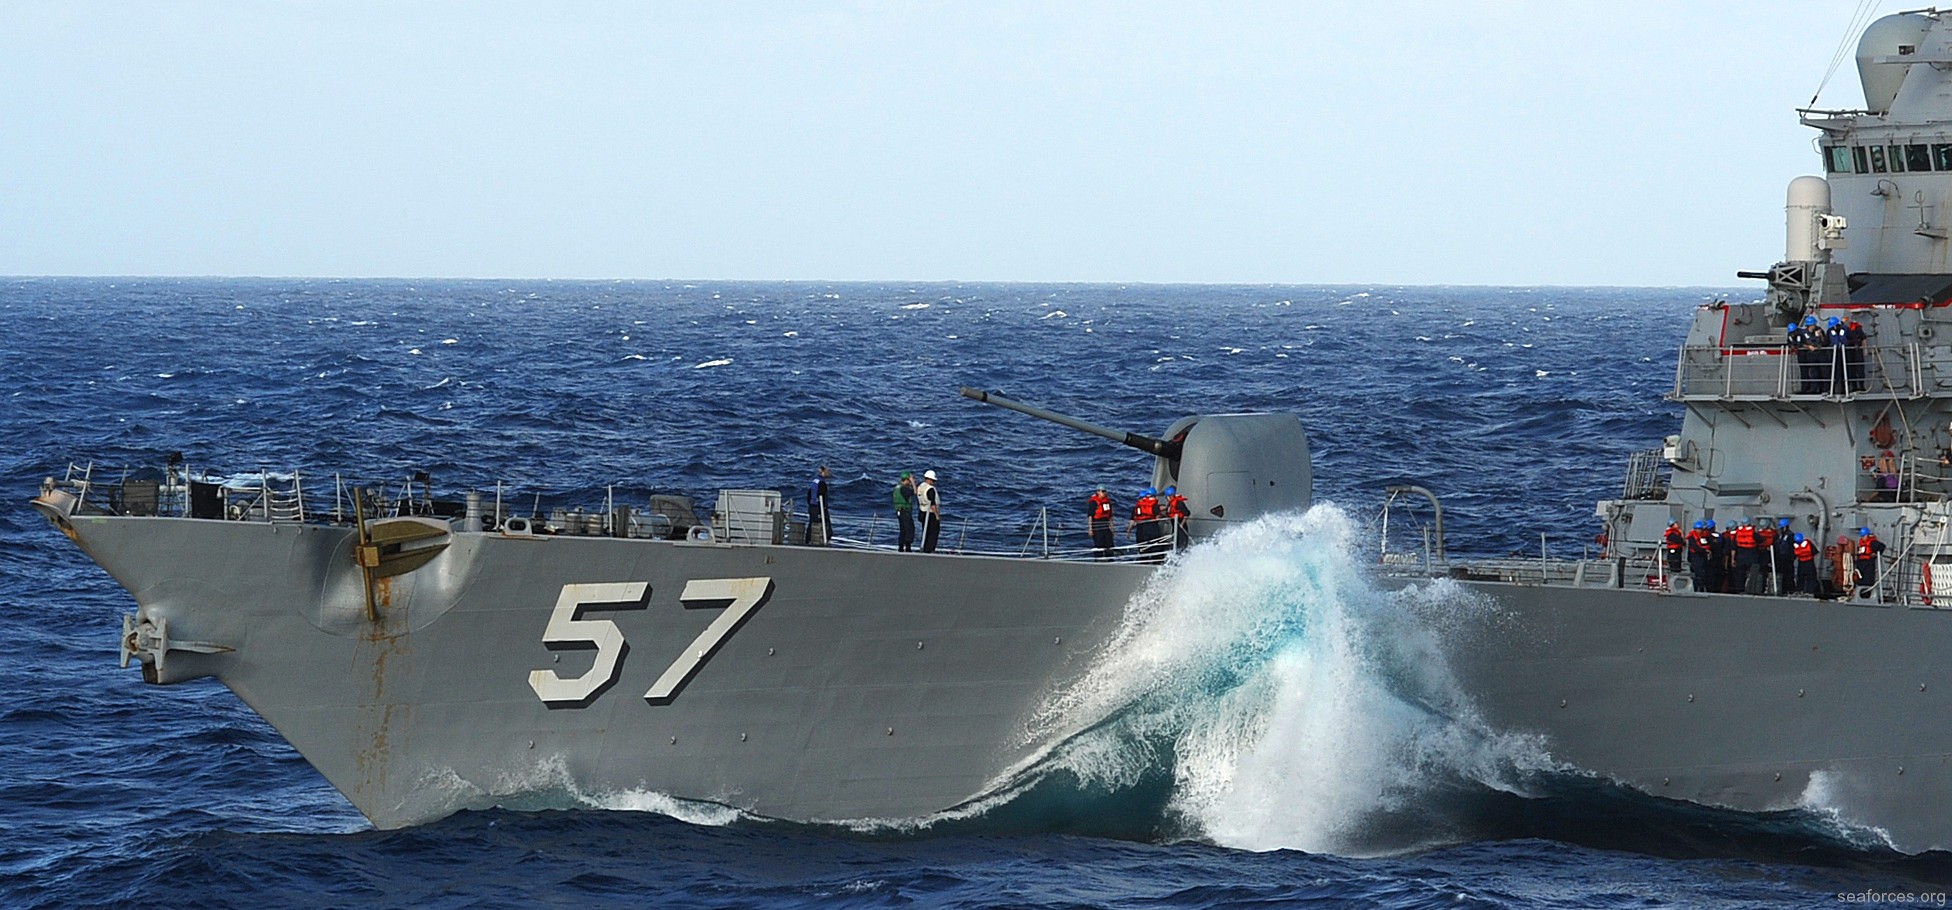 ddg-57 uss mitscher guided missile destroyer us navy 25